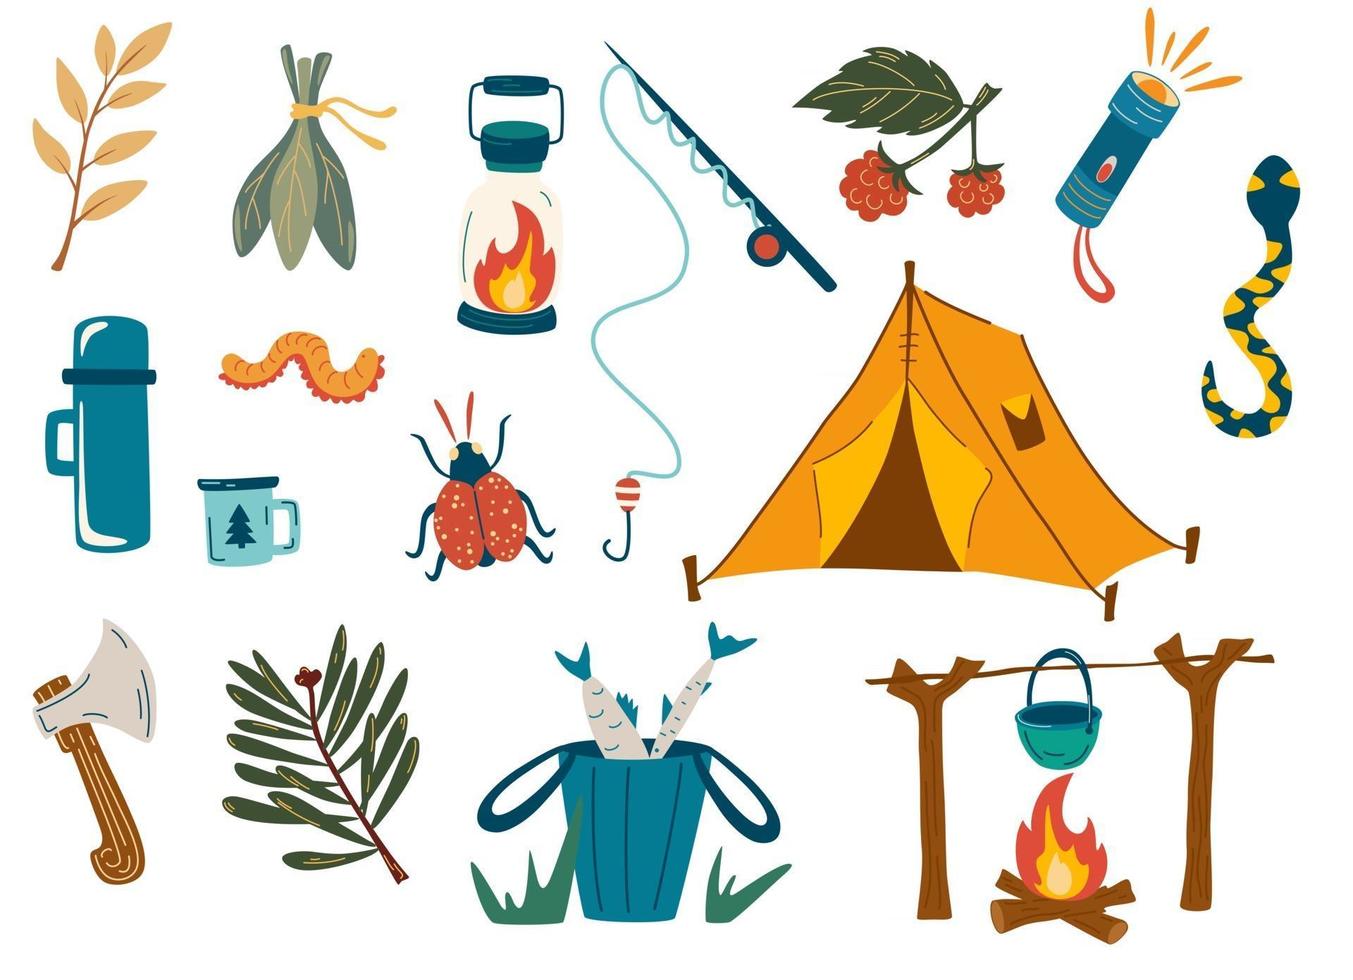 conjunto de camping y senderismo. recreación al aire libre, pesca, caminatas en el bosque. para álbumes de recortes, proyectos de manualidades, carteles, etiquetas, adhesivos. caña de pescar, carpa, fuego, insectos, ramas, linterna, hacha. vector